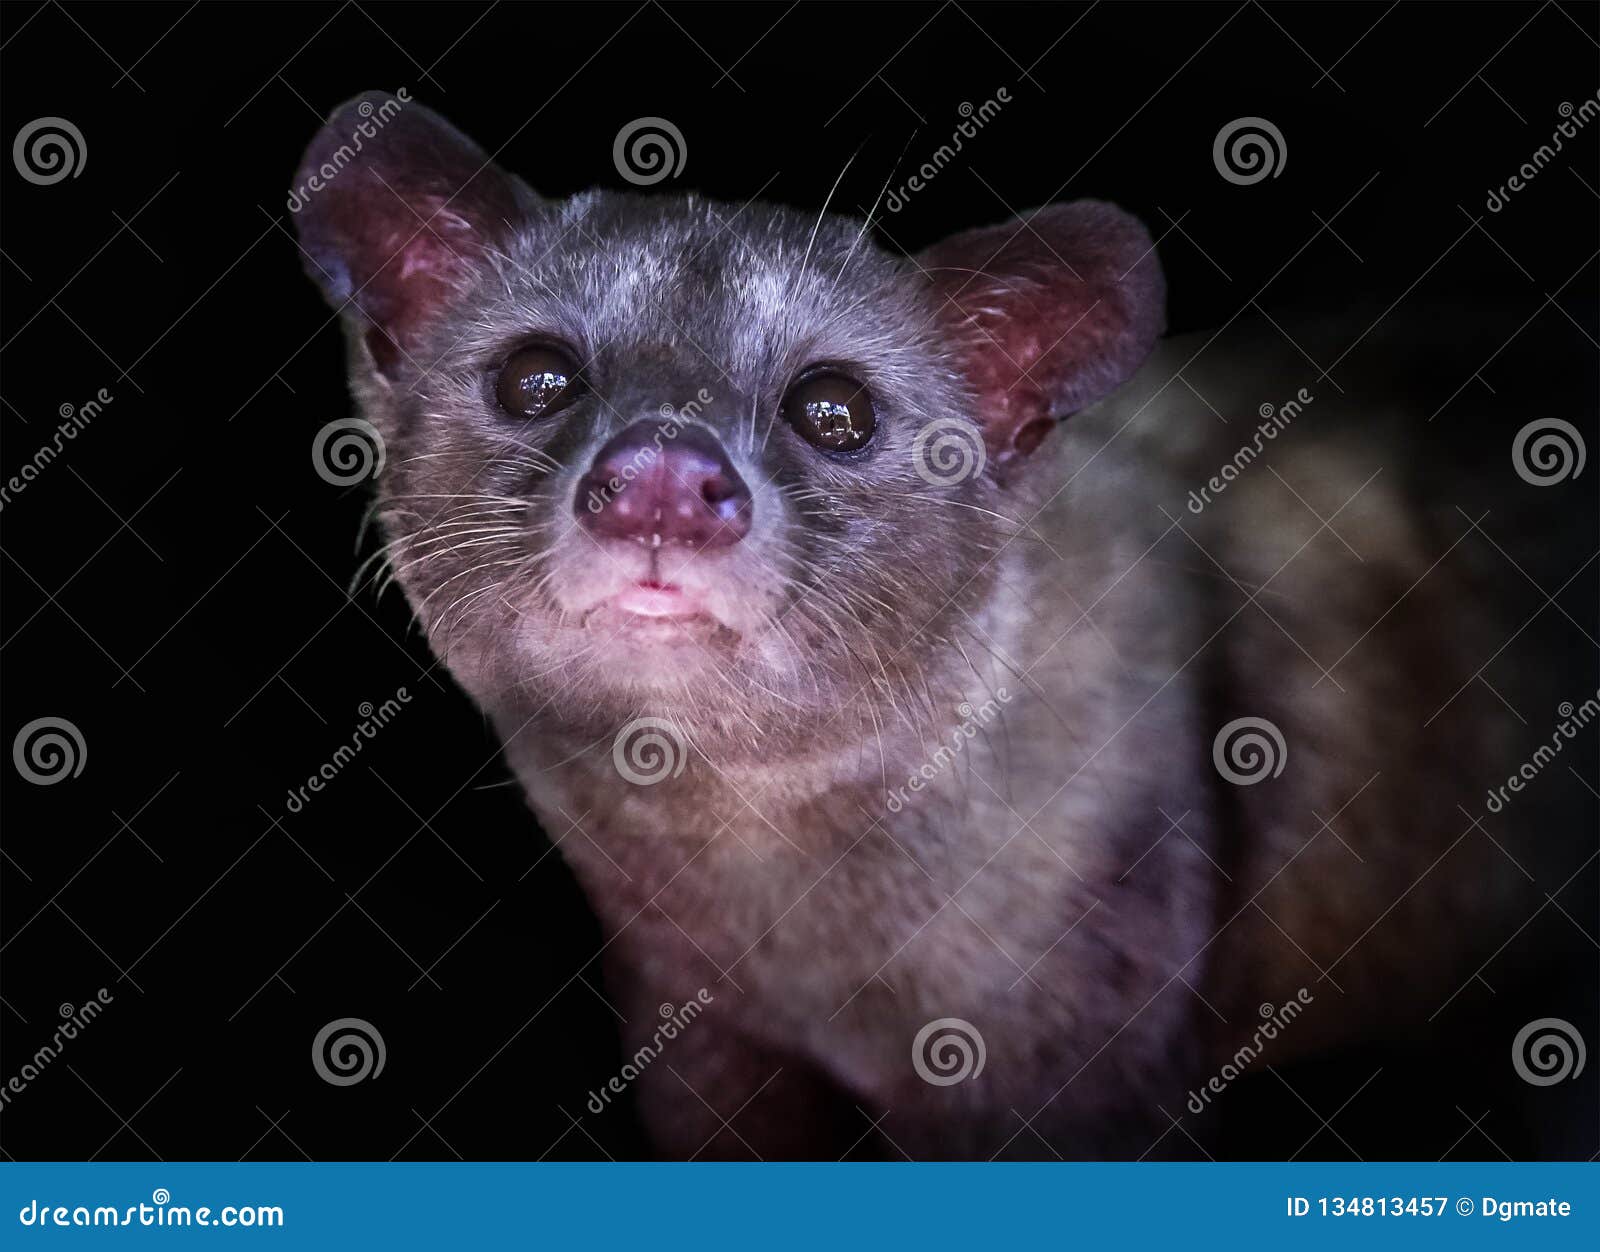 luwak civet cat in bali, indonesia